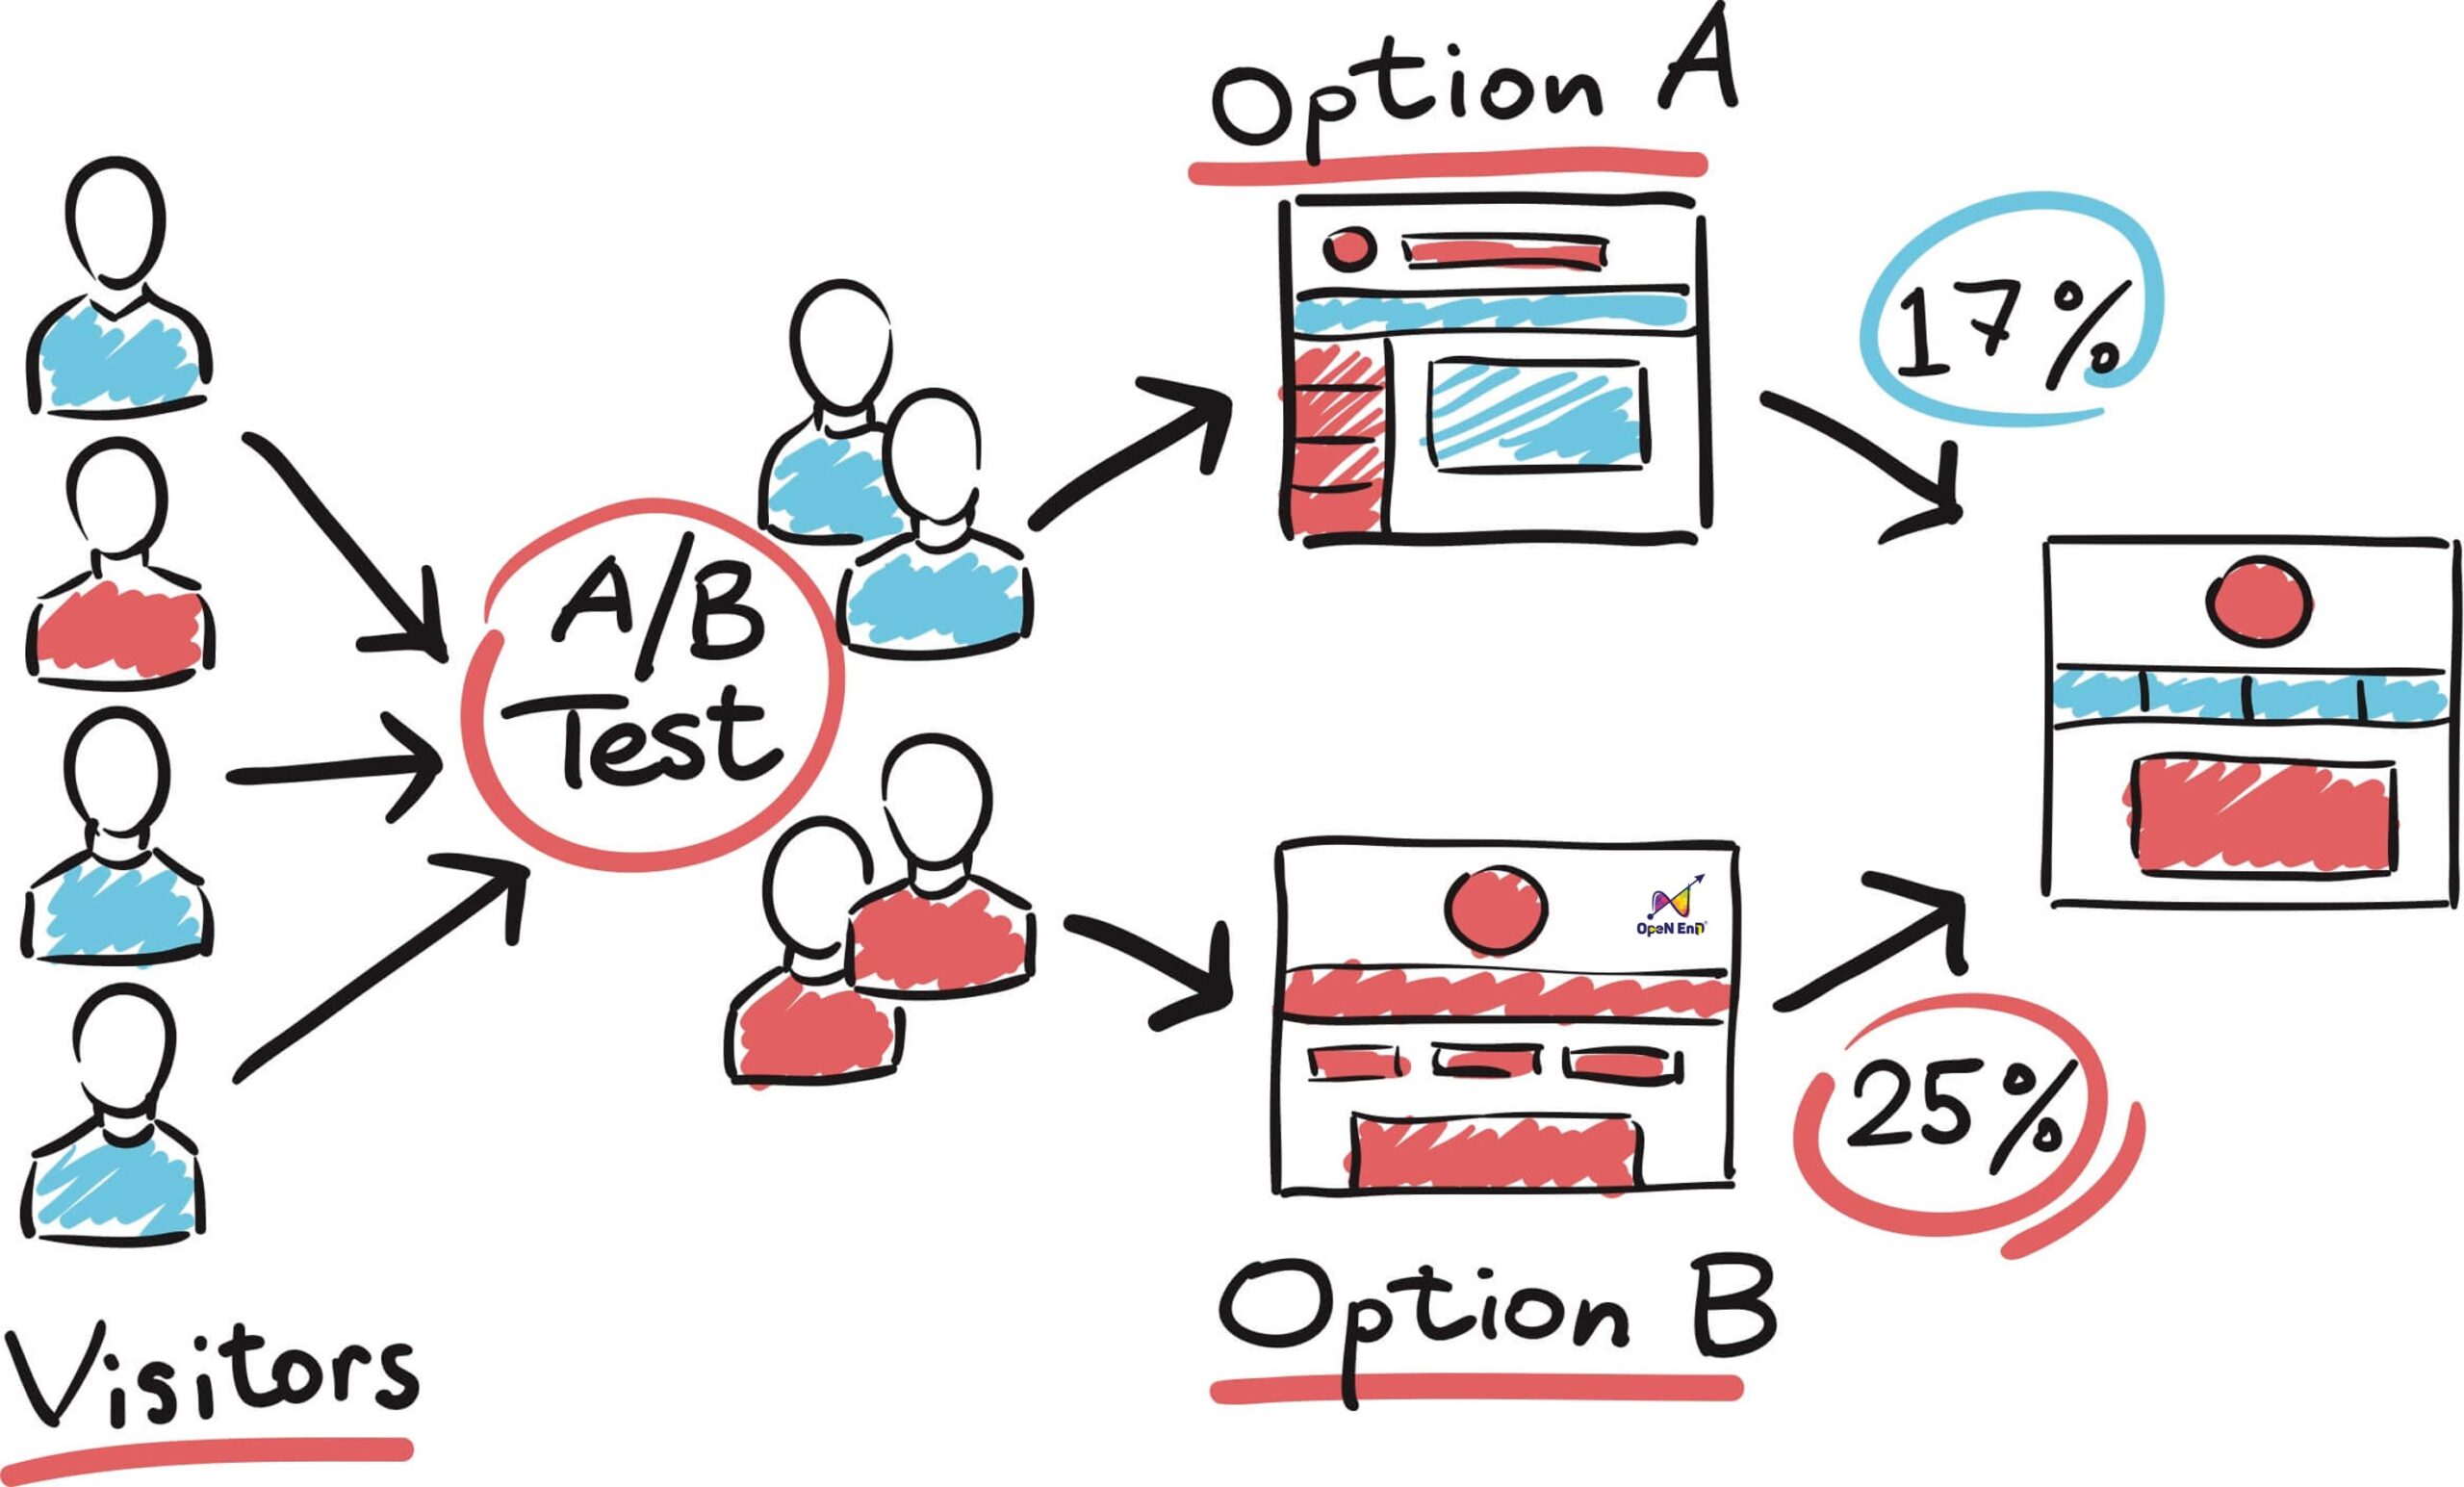 A/B Testing là gì?